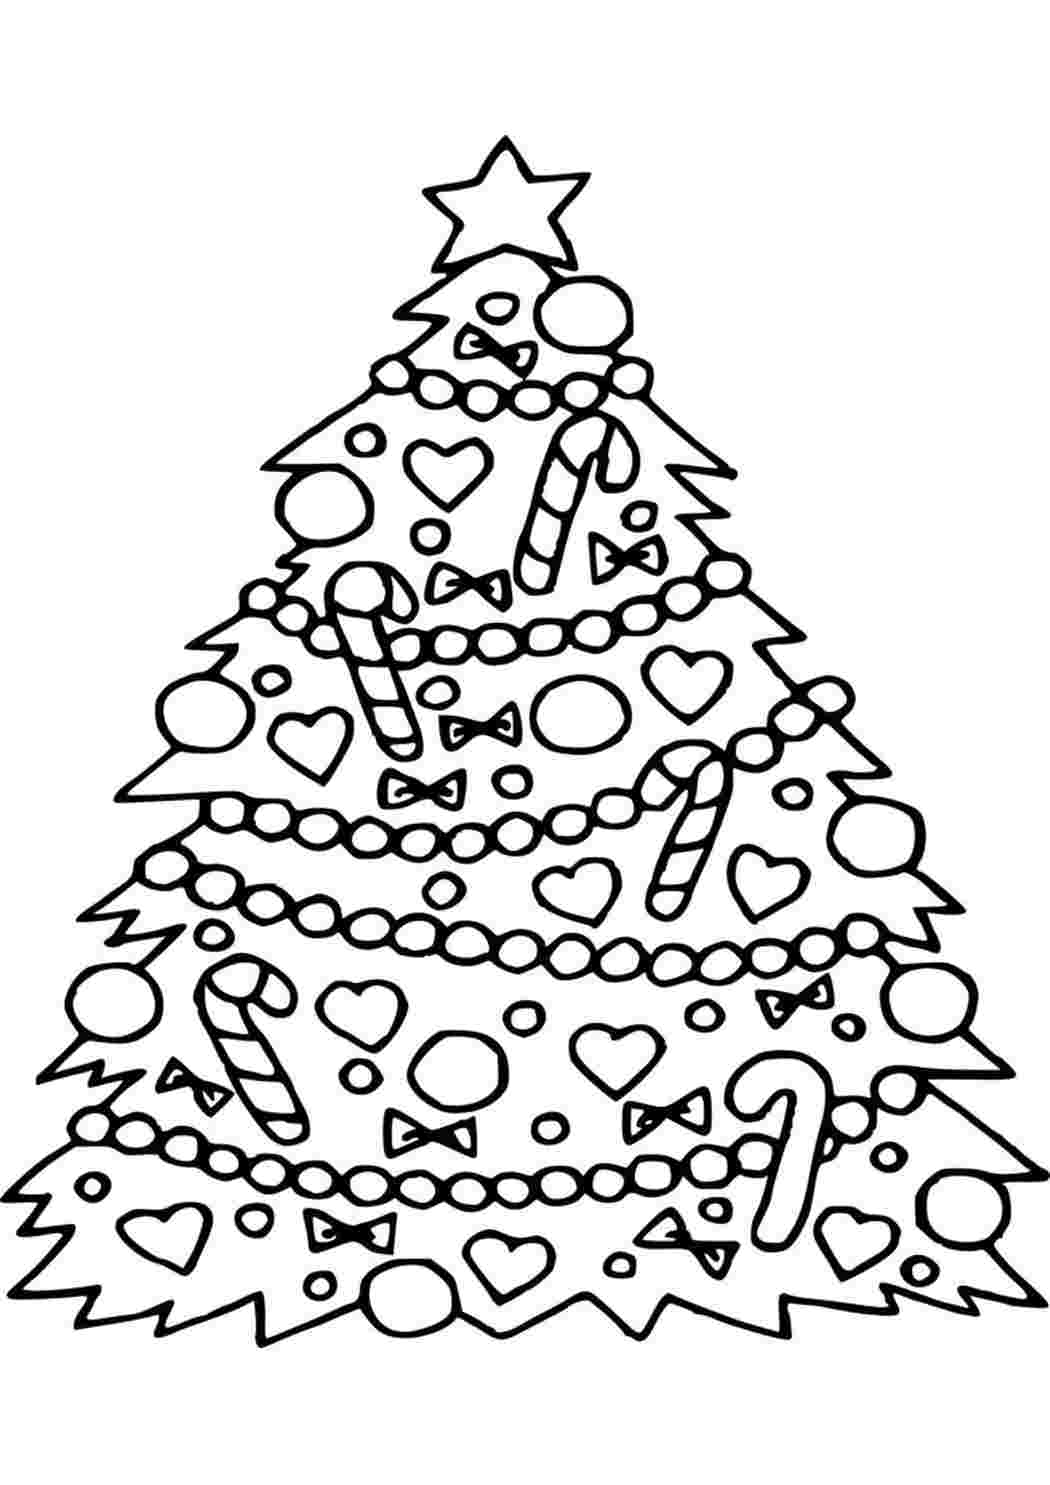 «Снегурочка у ёлки» бесплатная раскраска для детей - мальчиков и девочек